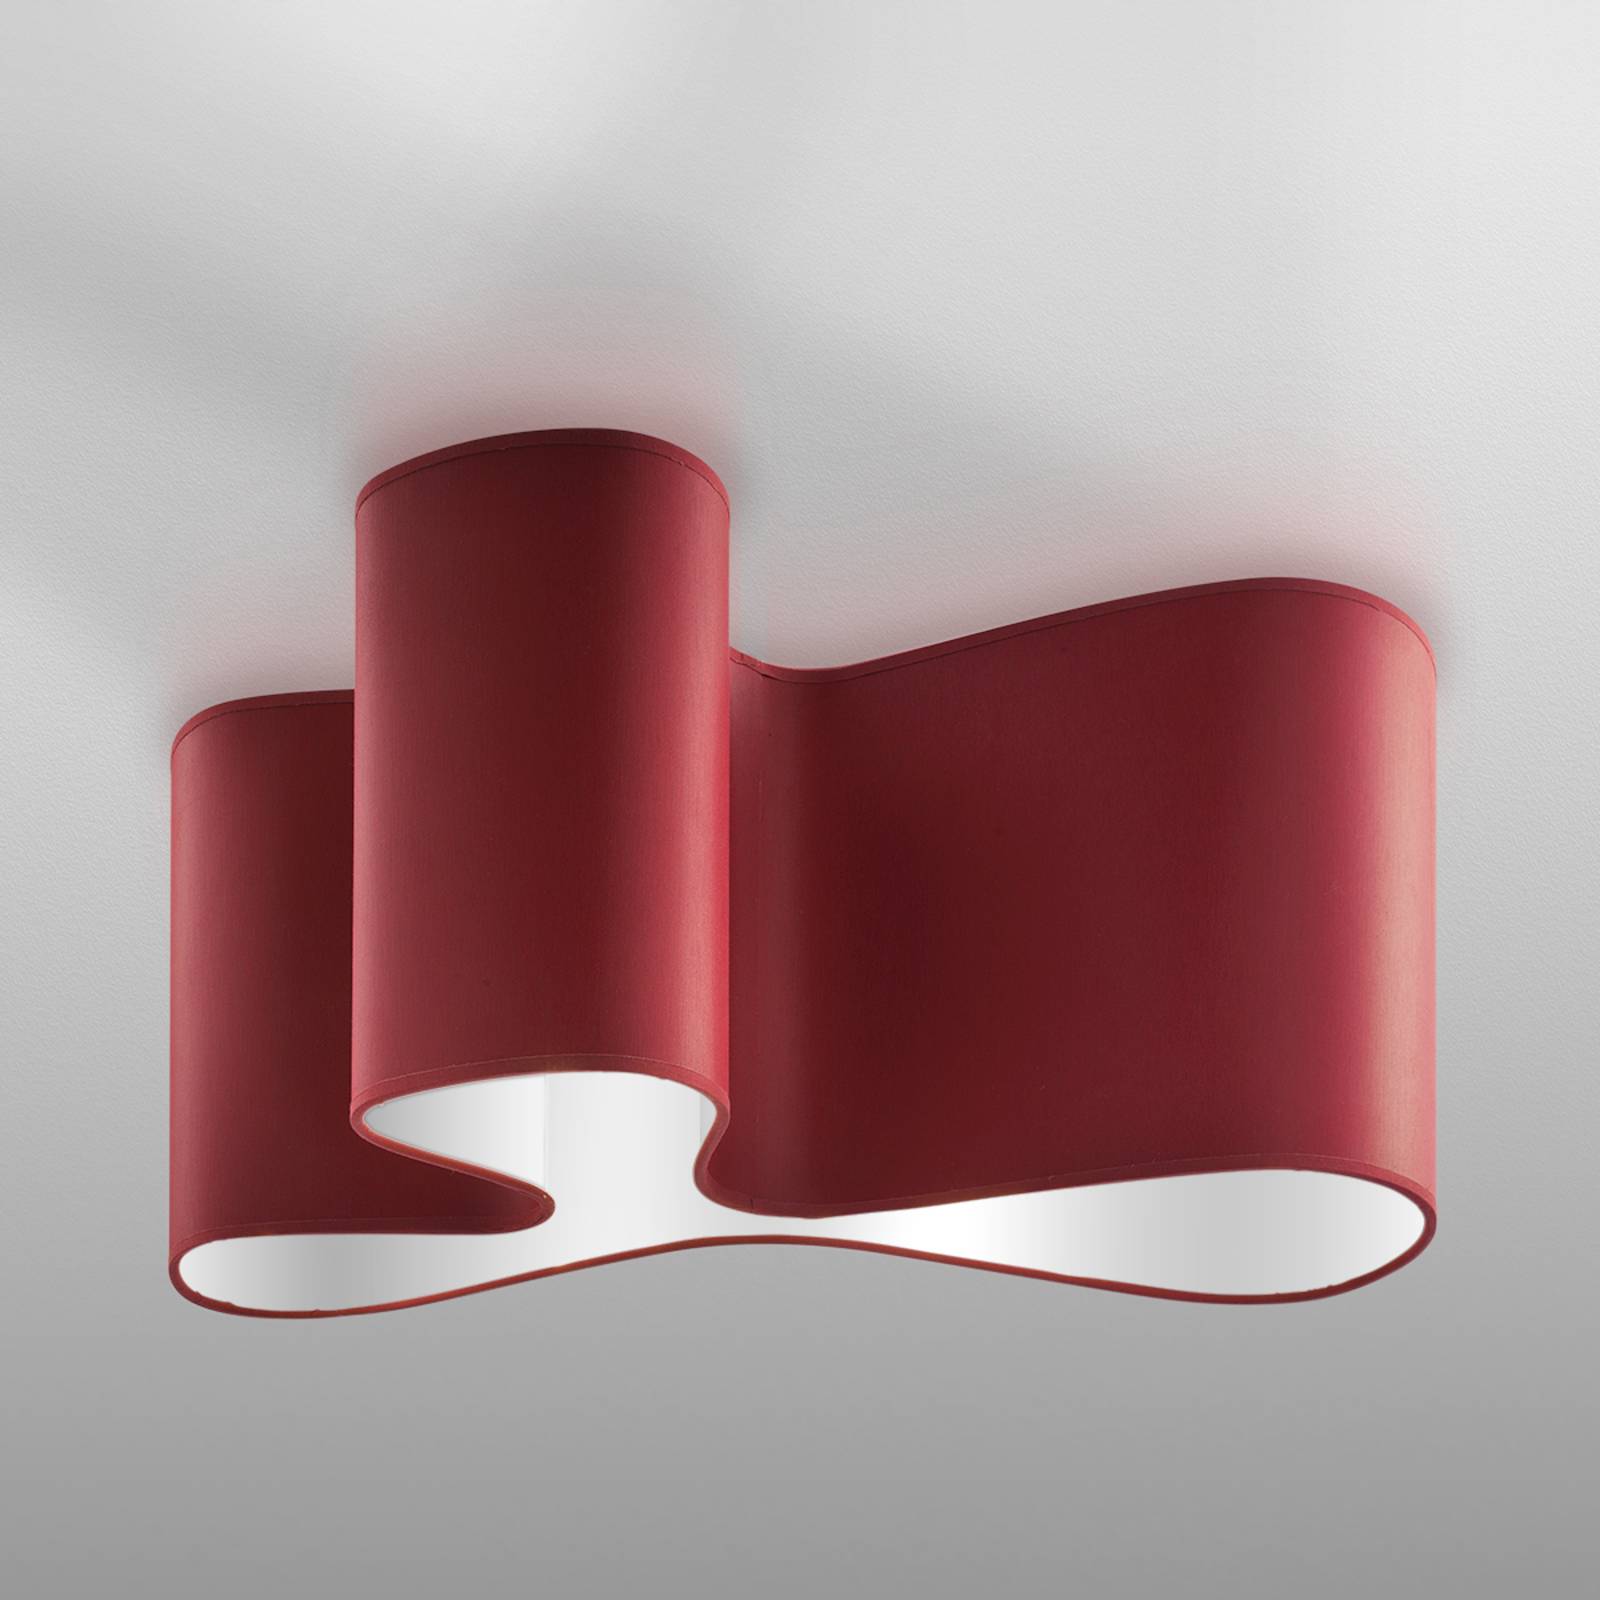 Designer-Deckenleuchte Mugello rot/weiß von Sil-Lux